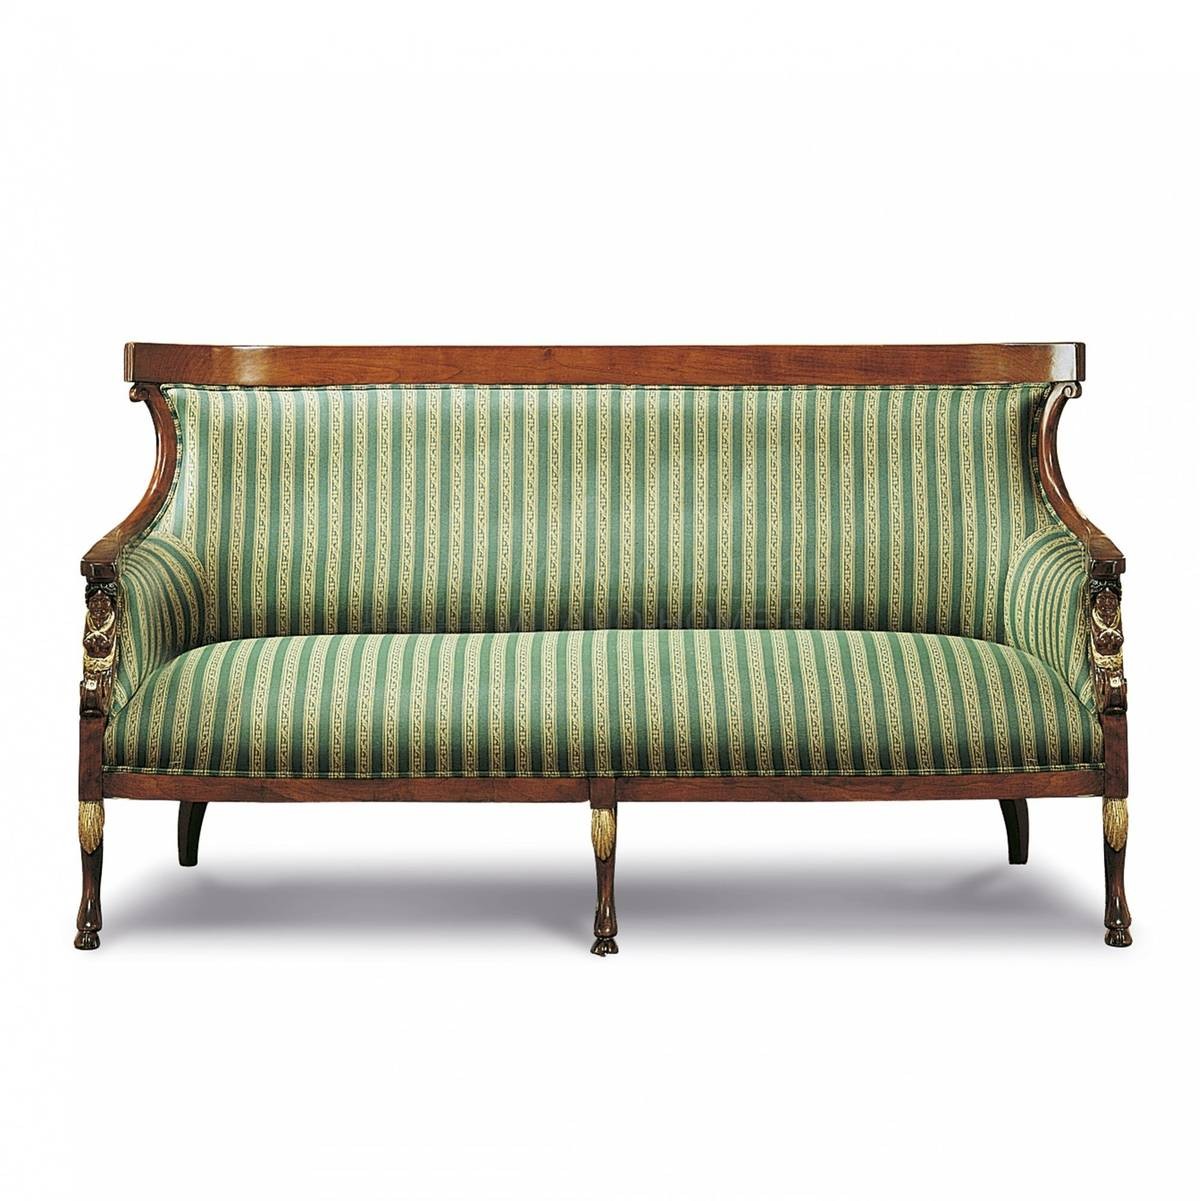 Прямой диван The Upholstery/D8 из Италии фабрики FRANCESCO MOLON